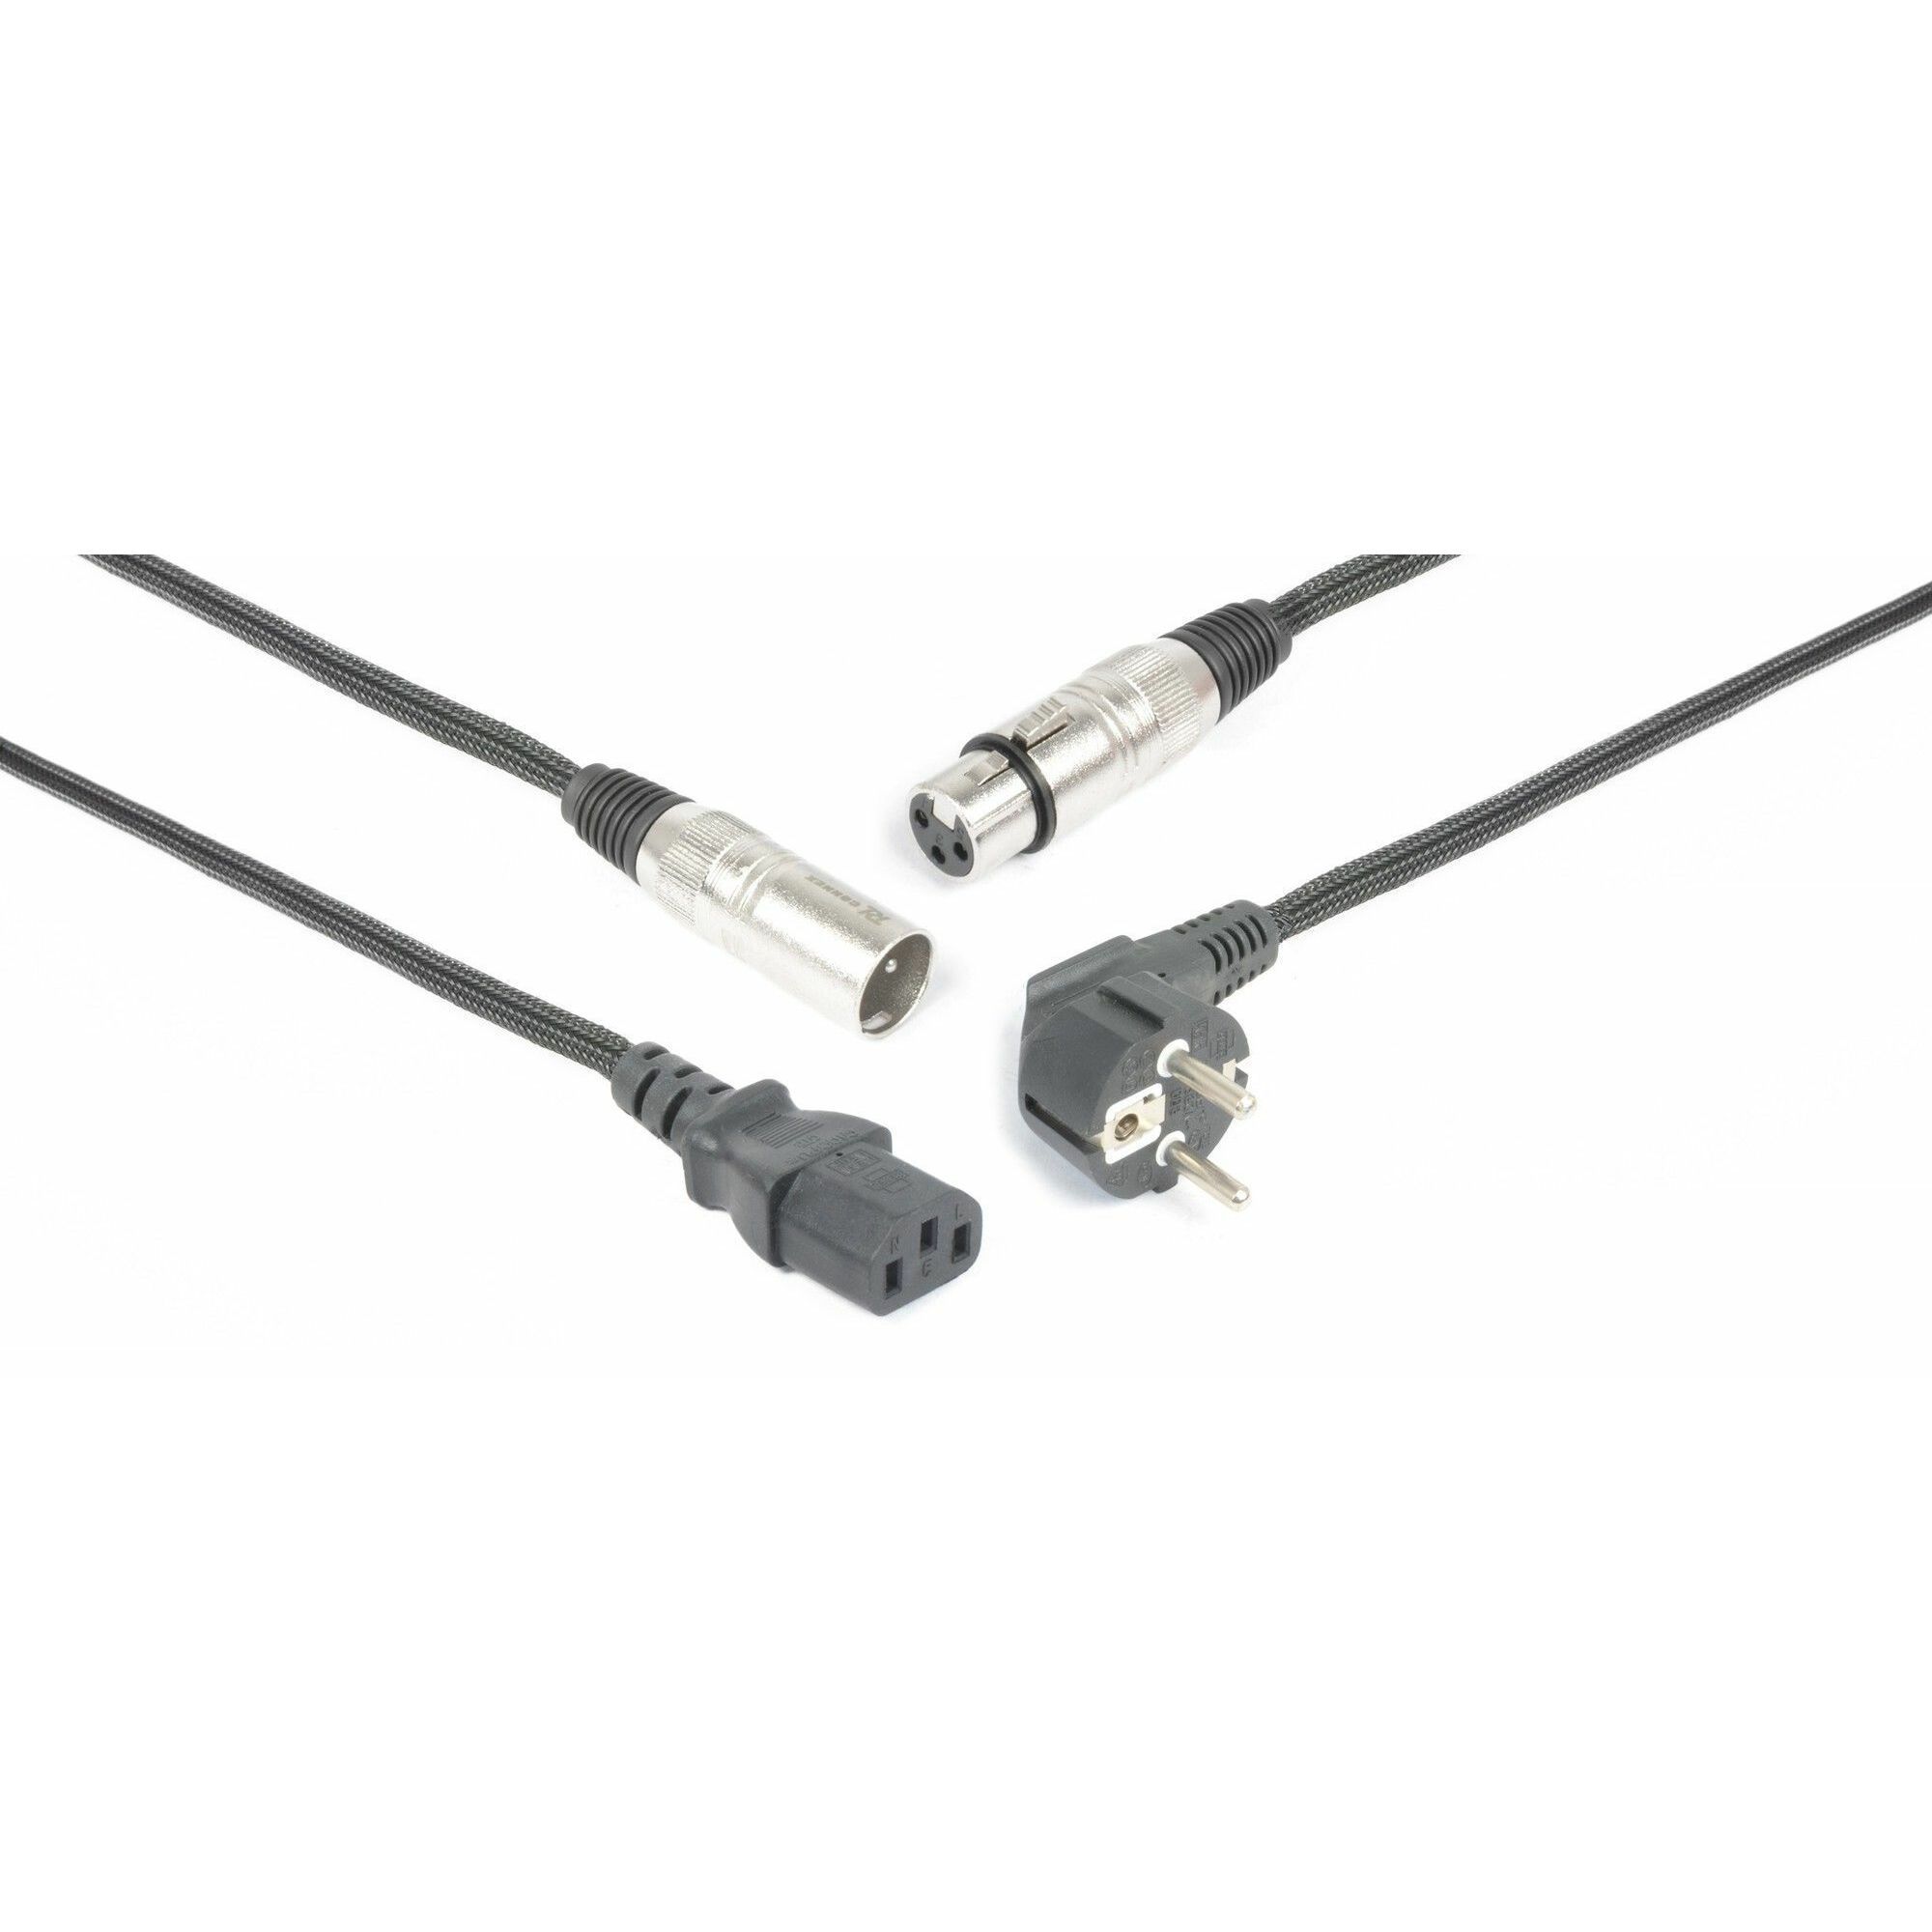 Pronomic Stage câble pour microphone XLR (10 m) - bleu métallique